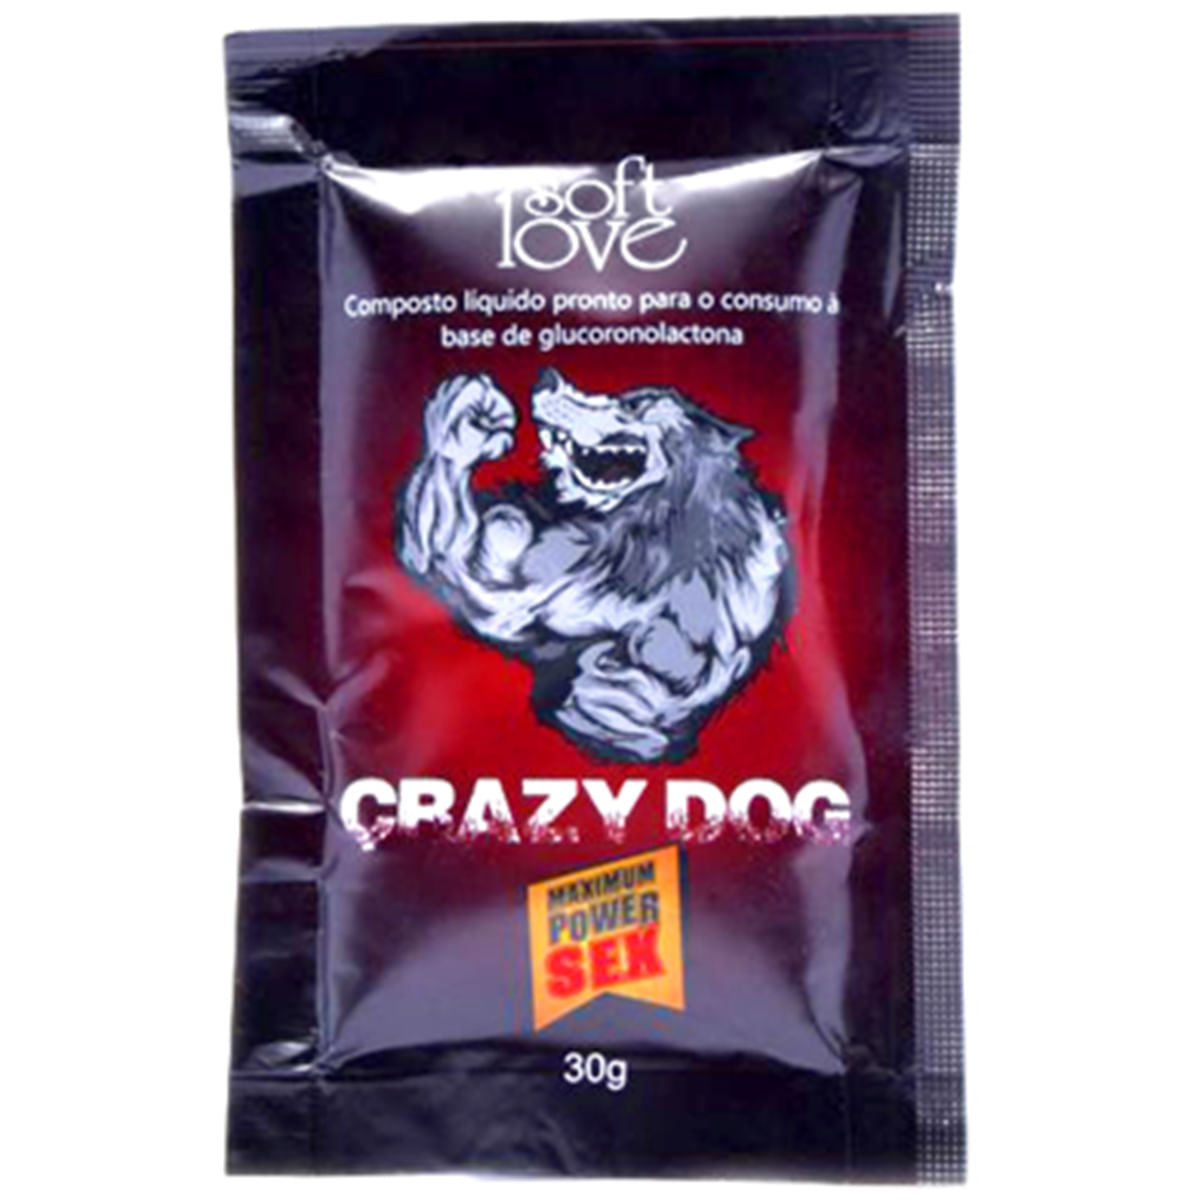 Crazy Dog Energético Afrodisíaco Maximum power Sex Solf Love